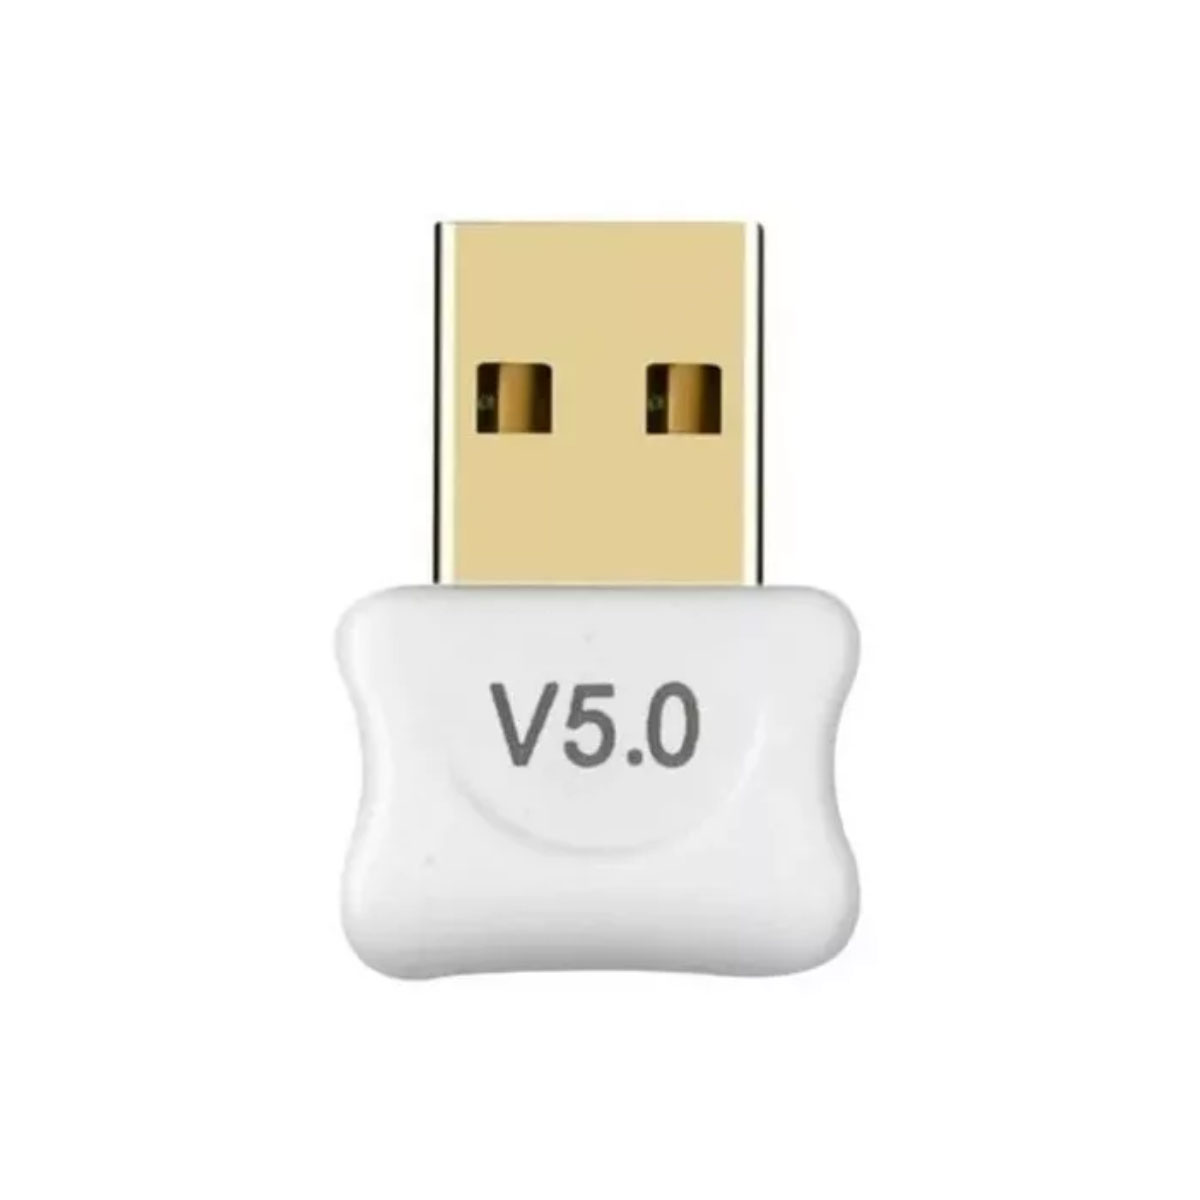 Adaptador USB Bluetooth 5.0 - Alcance de até 20 metros - Branco - AD0574W